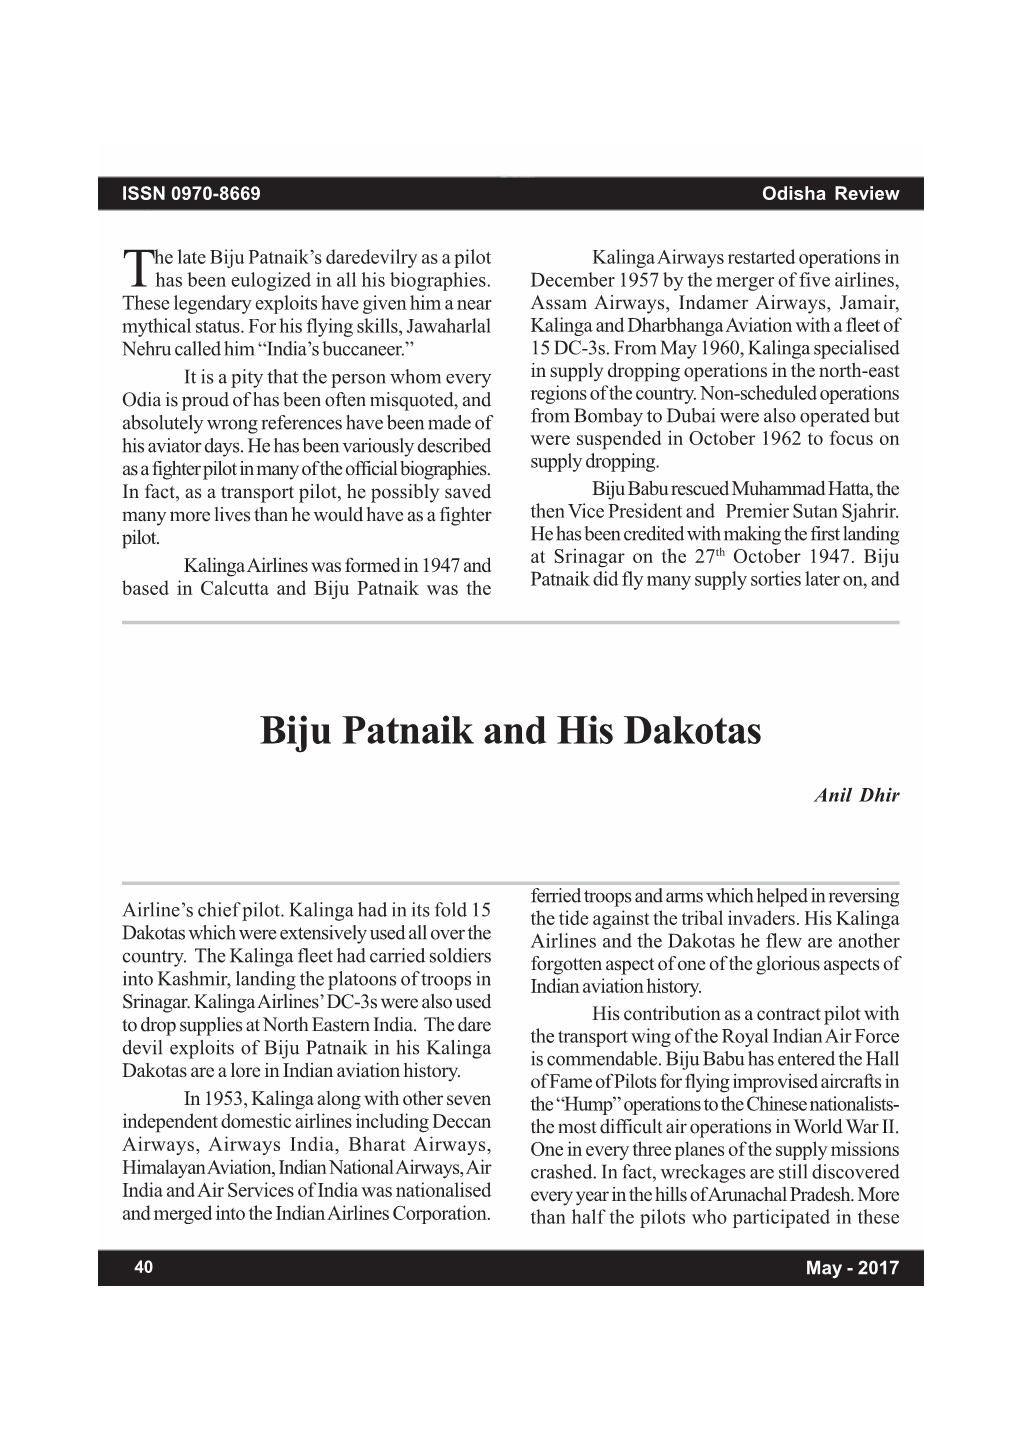 Biju Patnaik and His Dakotas